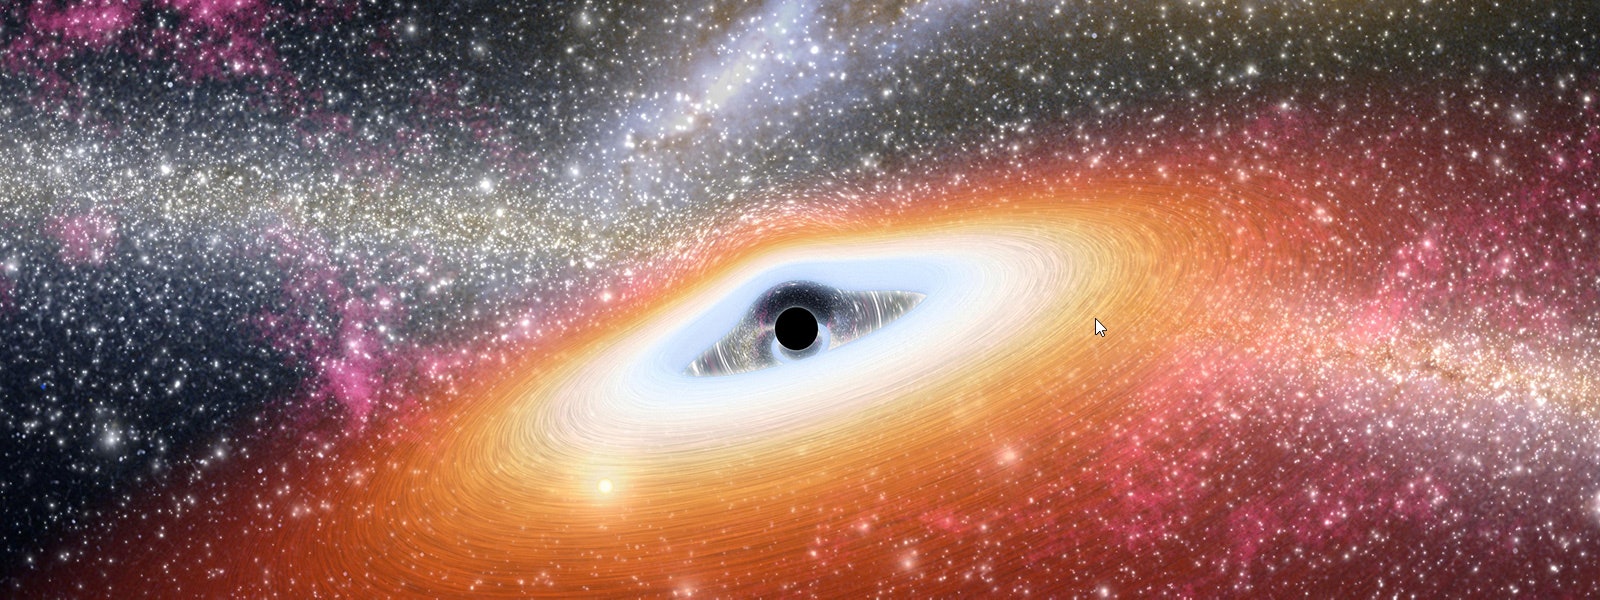 facts about blackhole